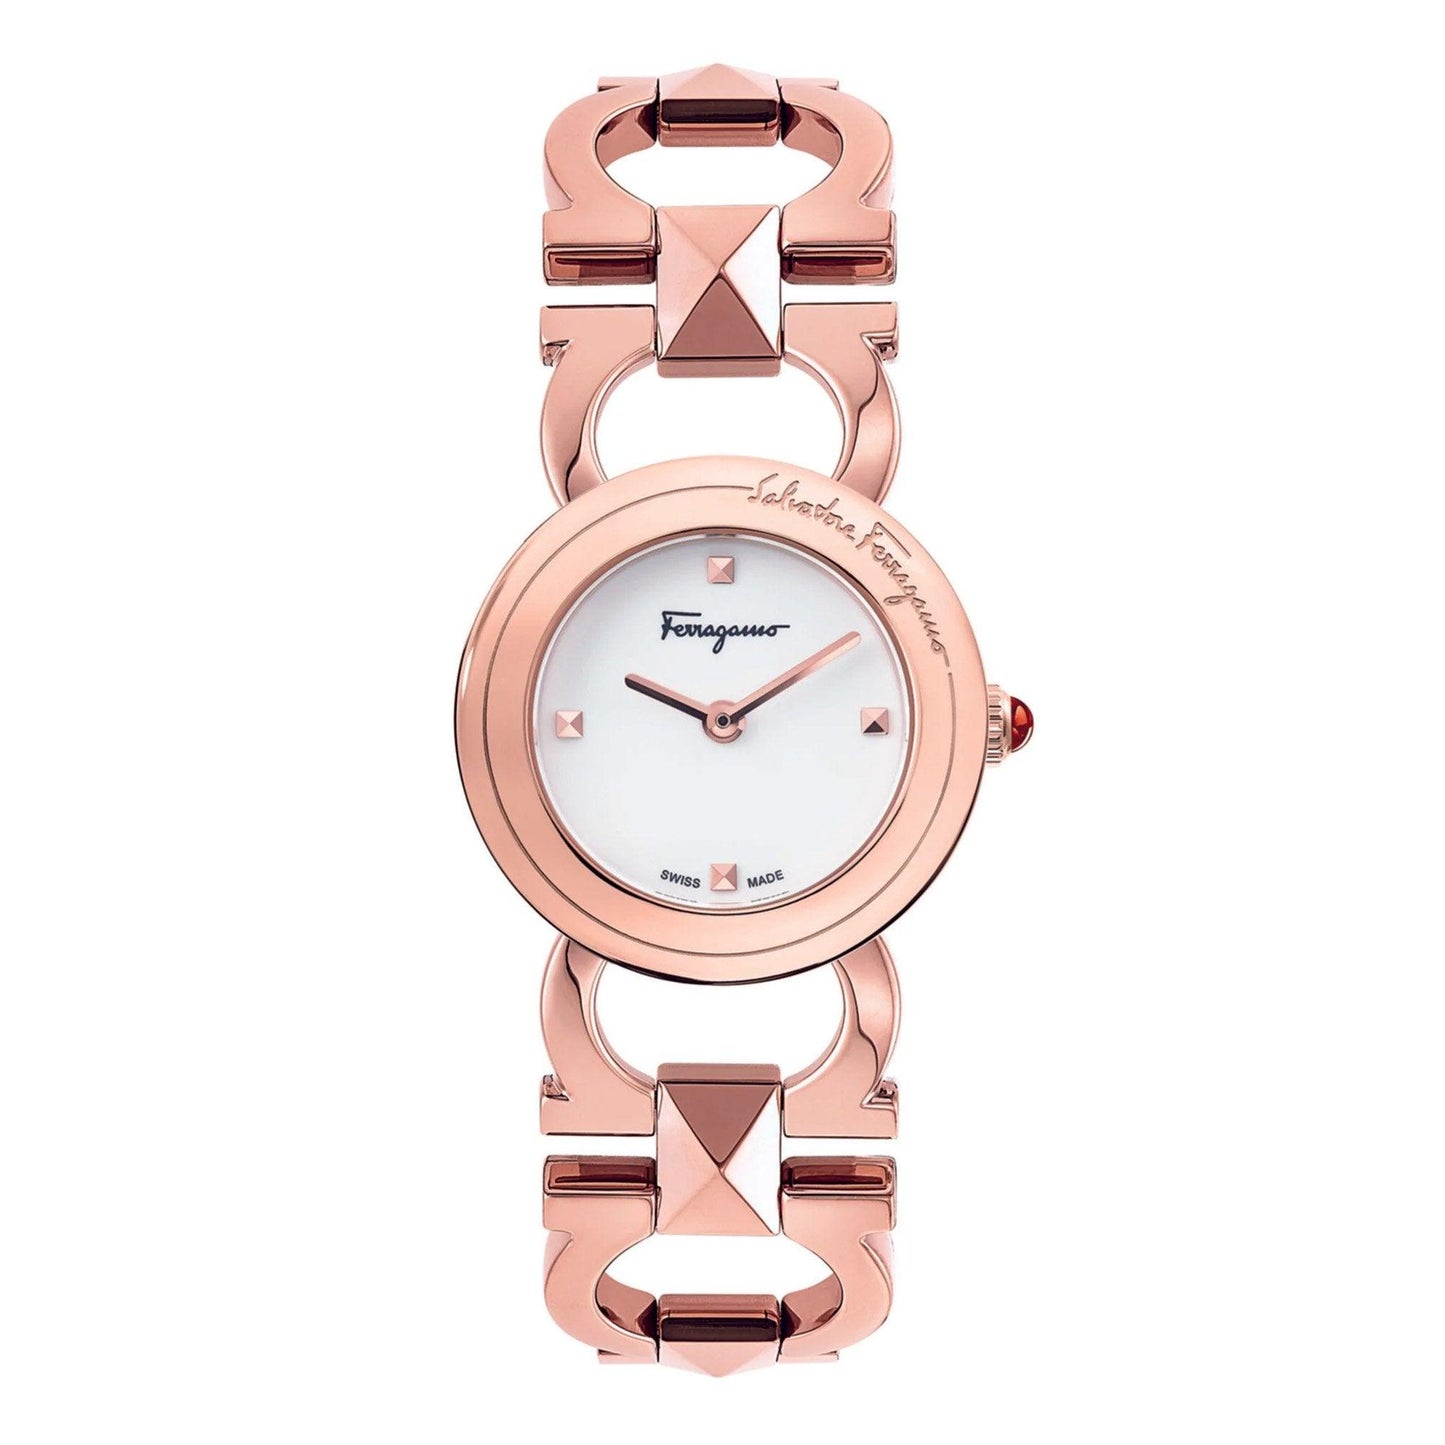 Salvatore Ferragamo SFMI00322 orologio donna al quarzo - Kechiq Concept Boutique